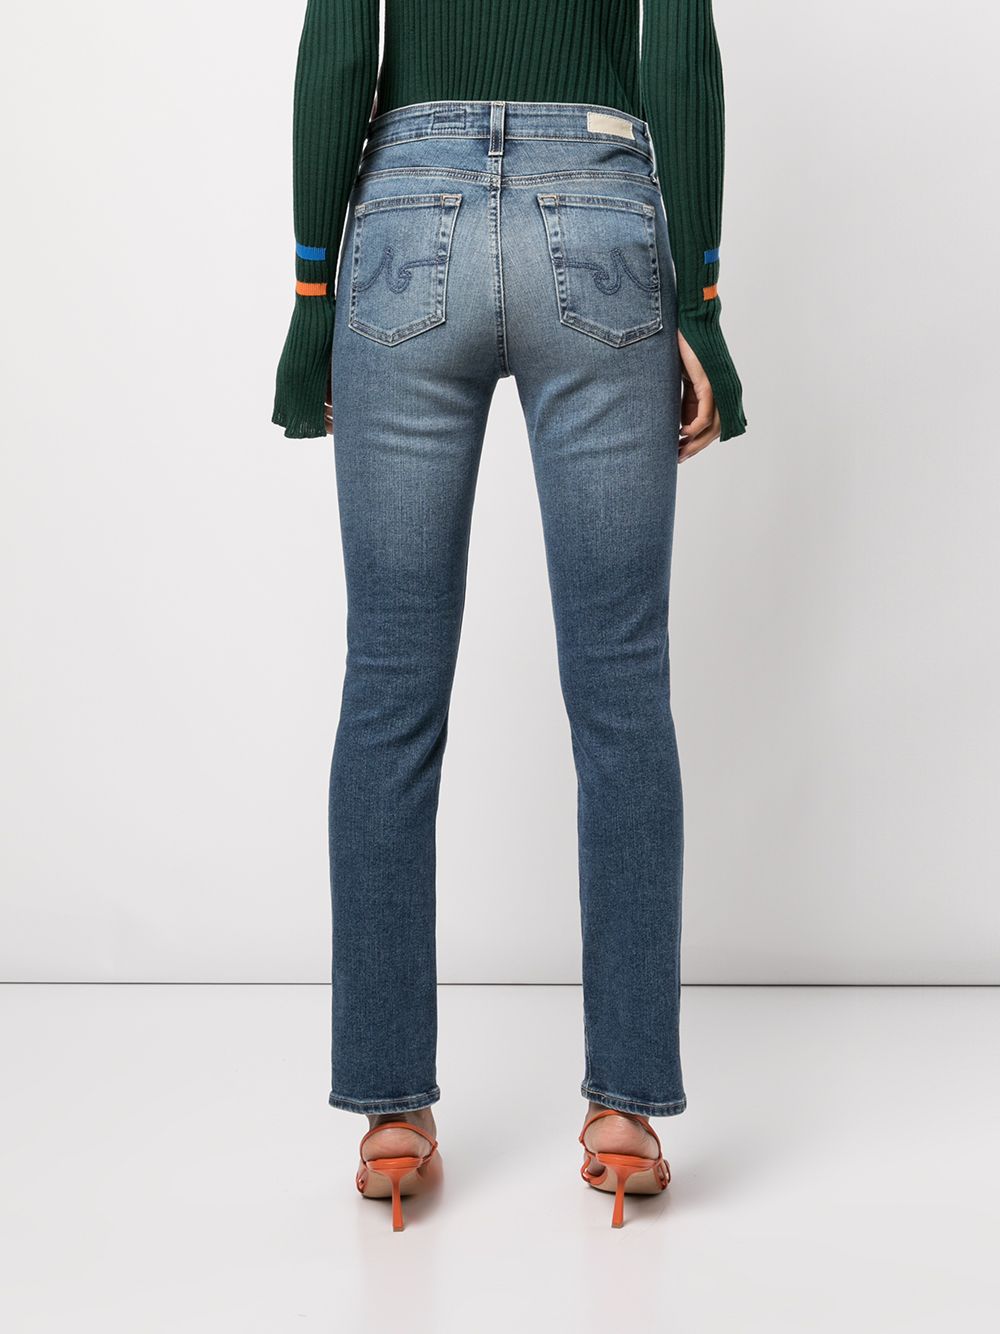 фото Ag jeans прямые джинсы mari с завышенной талией